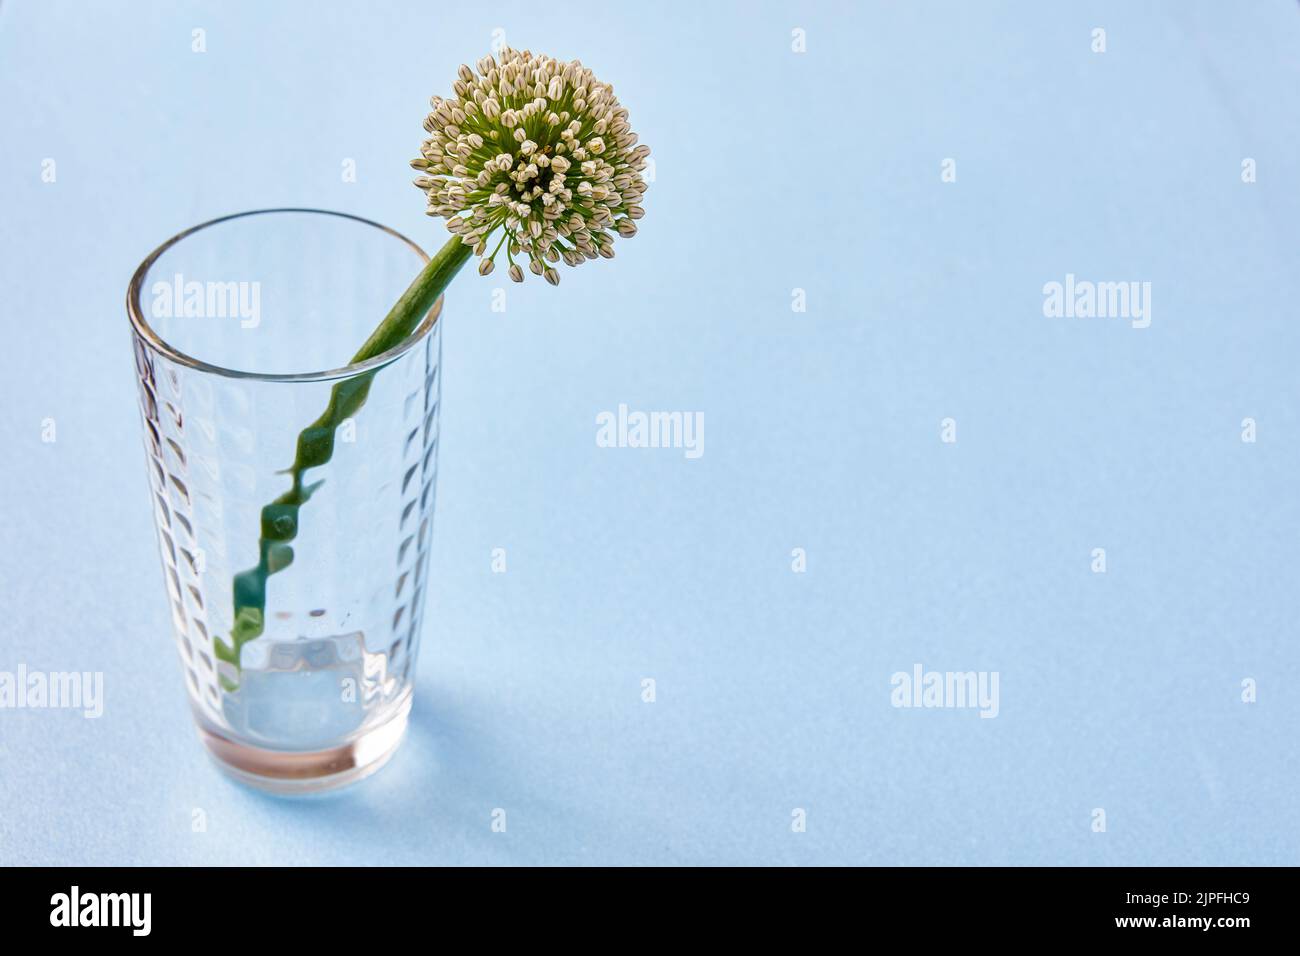 Fleur d'oignon sur tige verte dans un vase en verre, les oignons produisent des boules recouvertes de petites fleurs prêtes pour la pollinisation, fond bleu. Banque D'Images